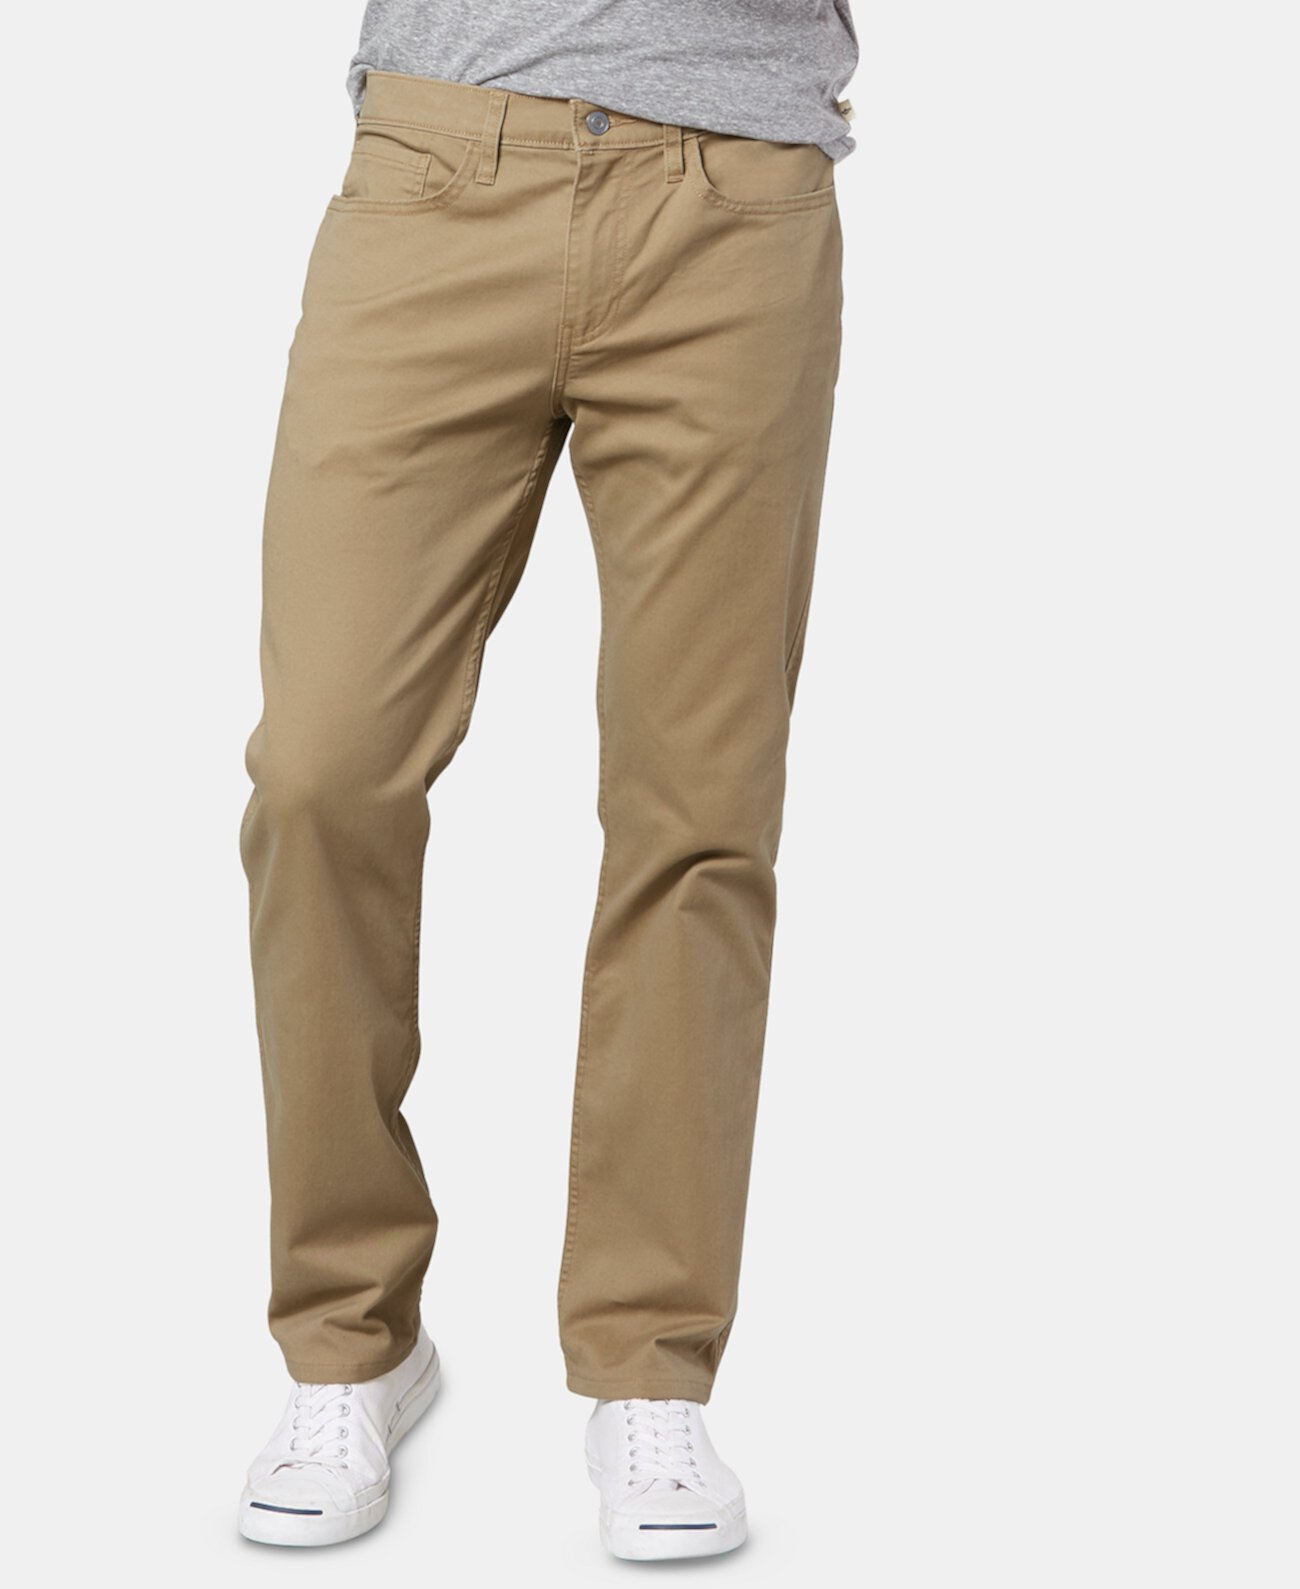 Мужские джинсовые прямые брюки с цветочным принтом All Seasons Tech цвета хаки Dockers